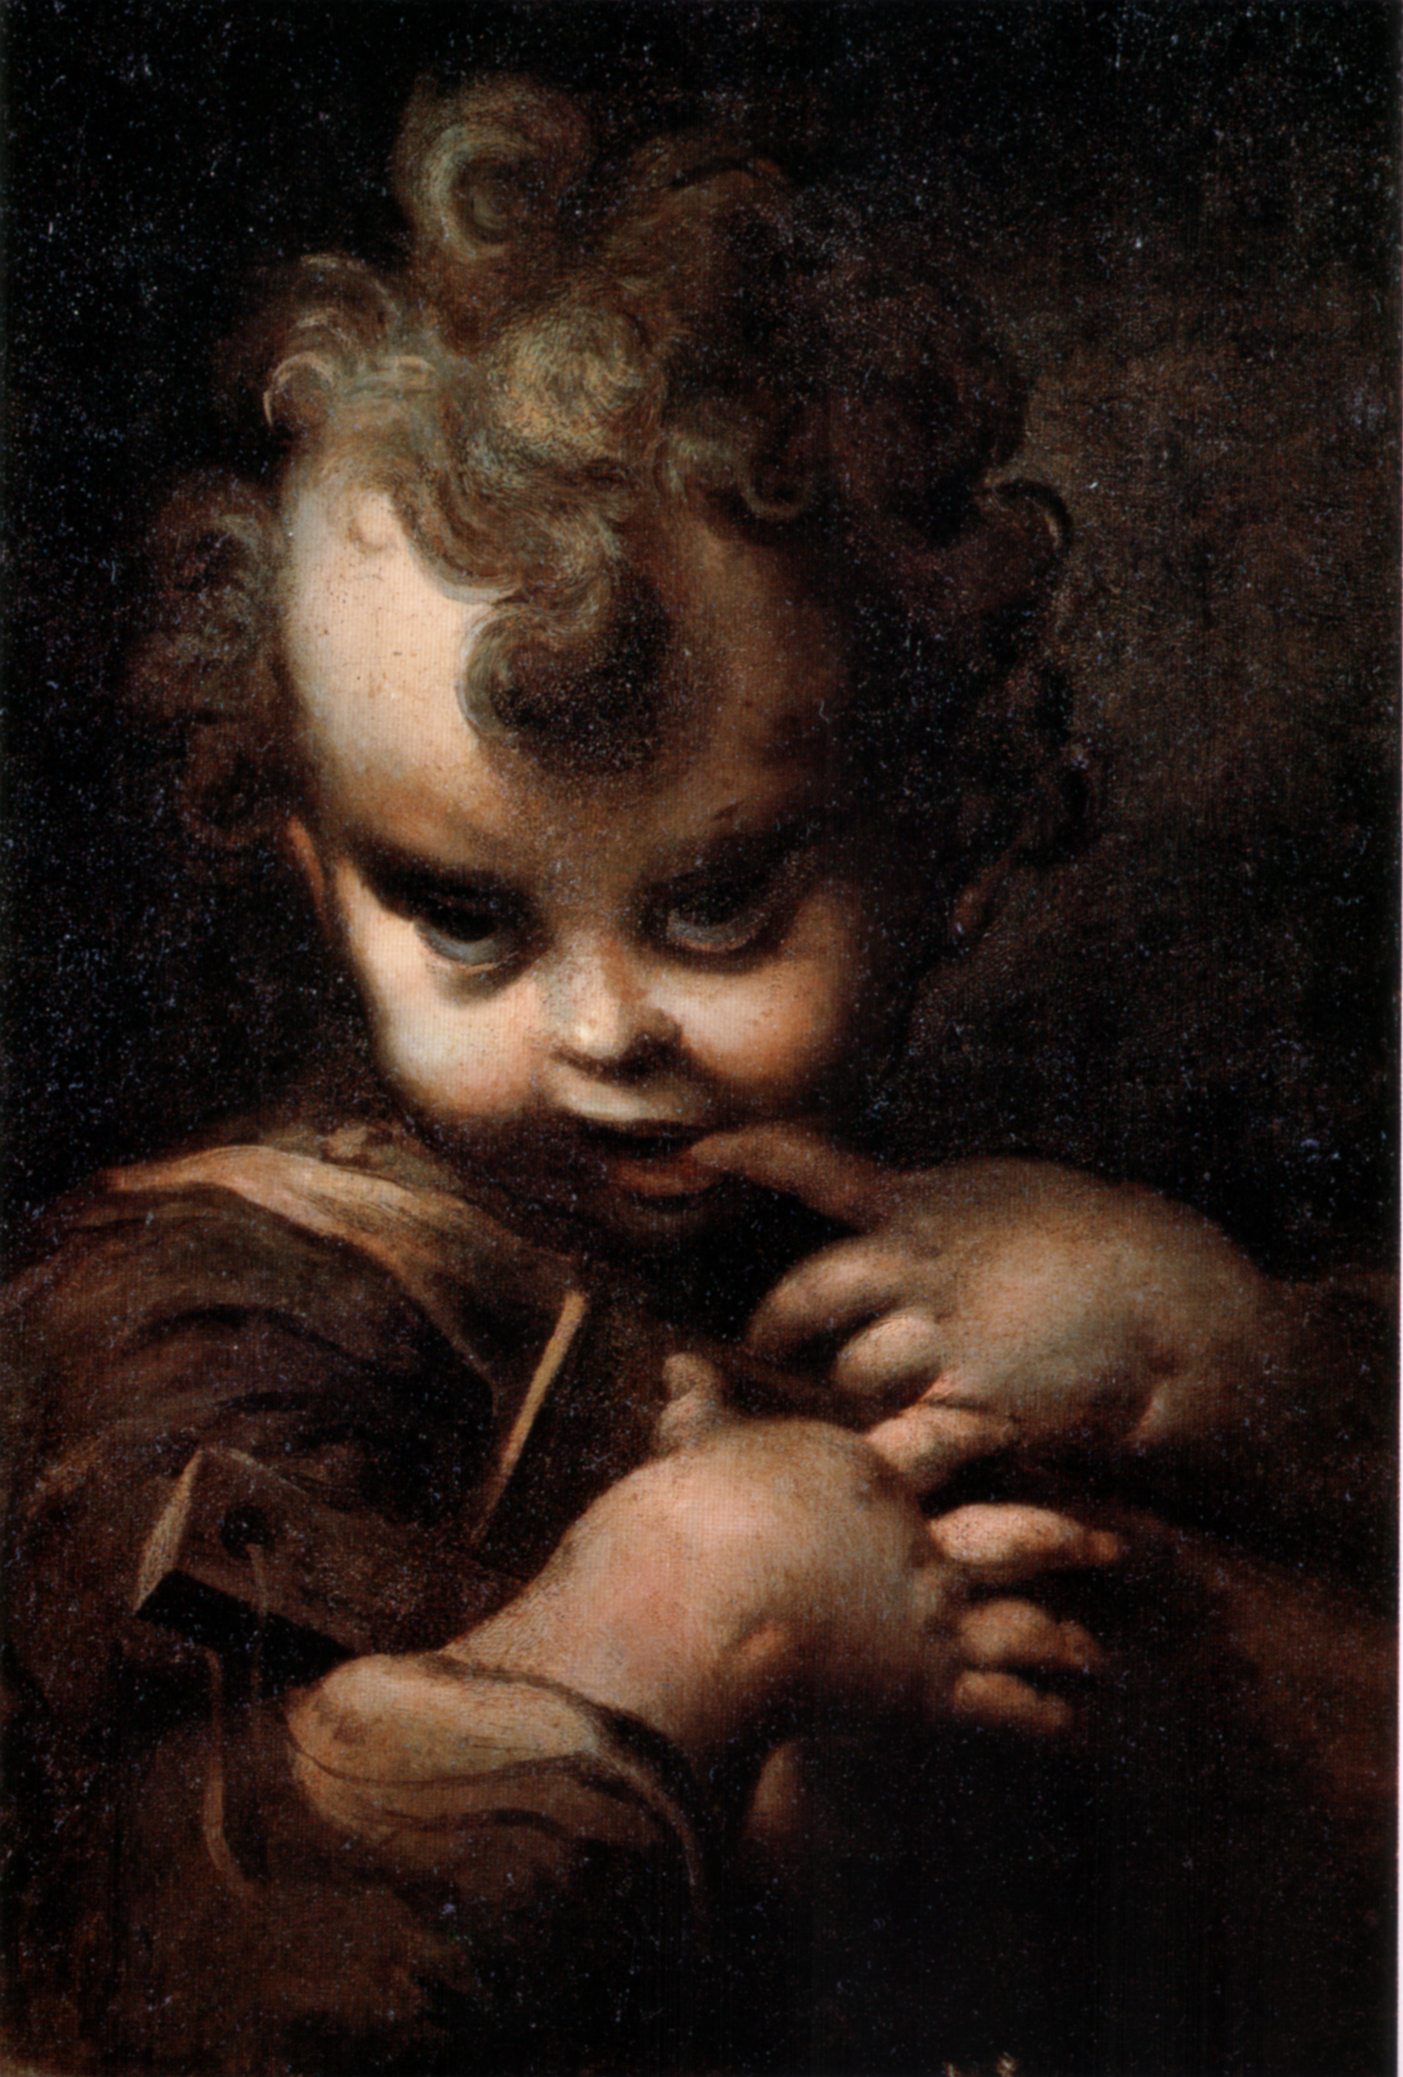 Parmigianino. Fanciullo con abbecedario. 1520-1530. Este pintor